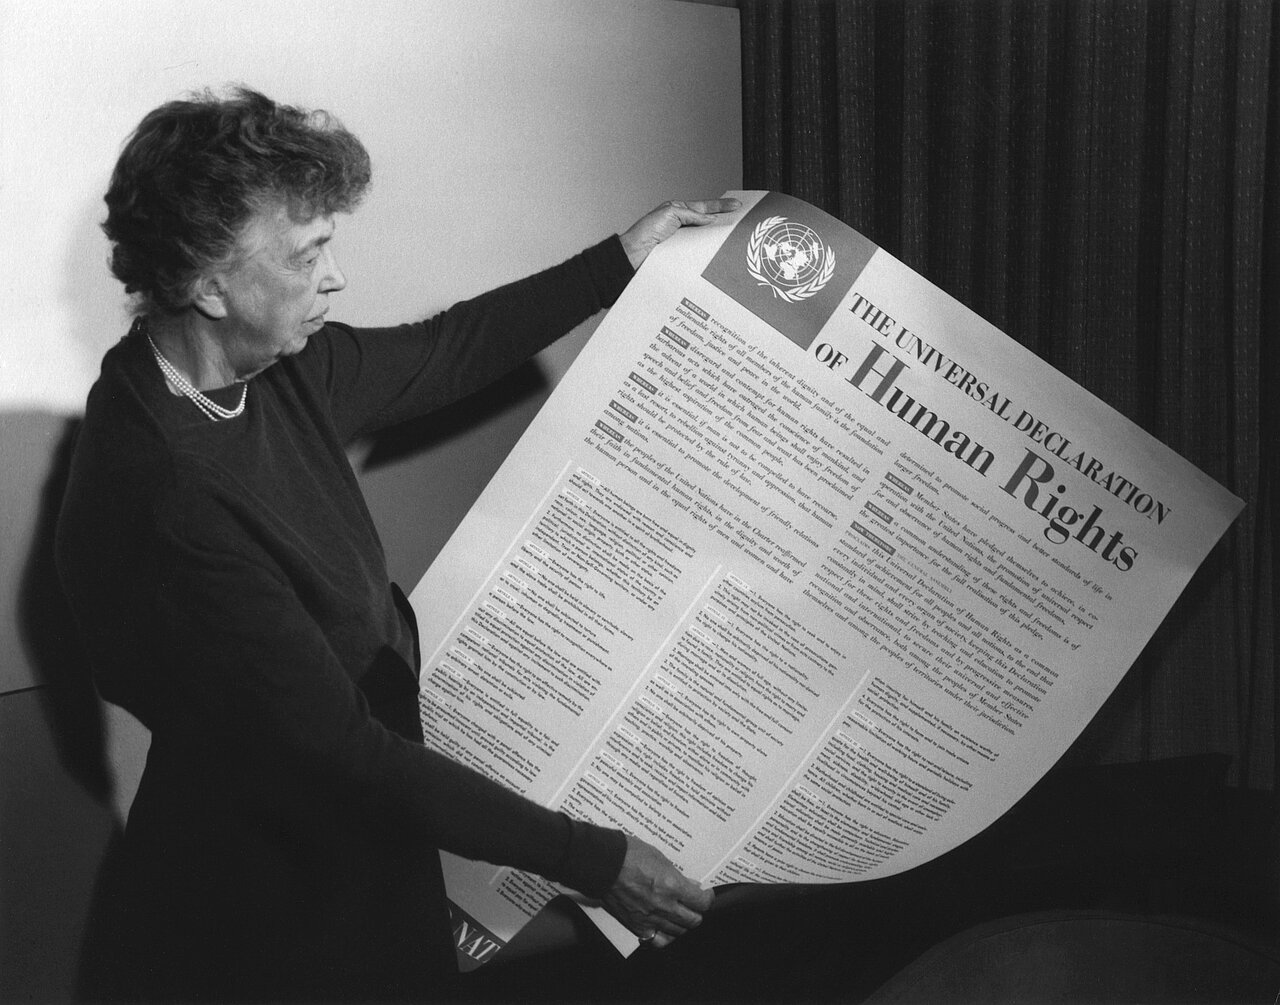 Eleanor Roosevelt mit einem Poster der Deklaration in englischer Sprache. FDR Presidential Library & Museum, CC BY 2.0 <https://creativecommons.org/licenses/by/2.0>, via Wikimedia Commons https://commons.wikimedia.org/wiki/File:Eleanor_Roosevelt_UDHR.jpg